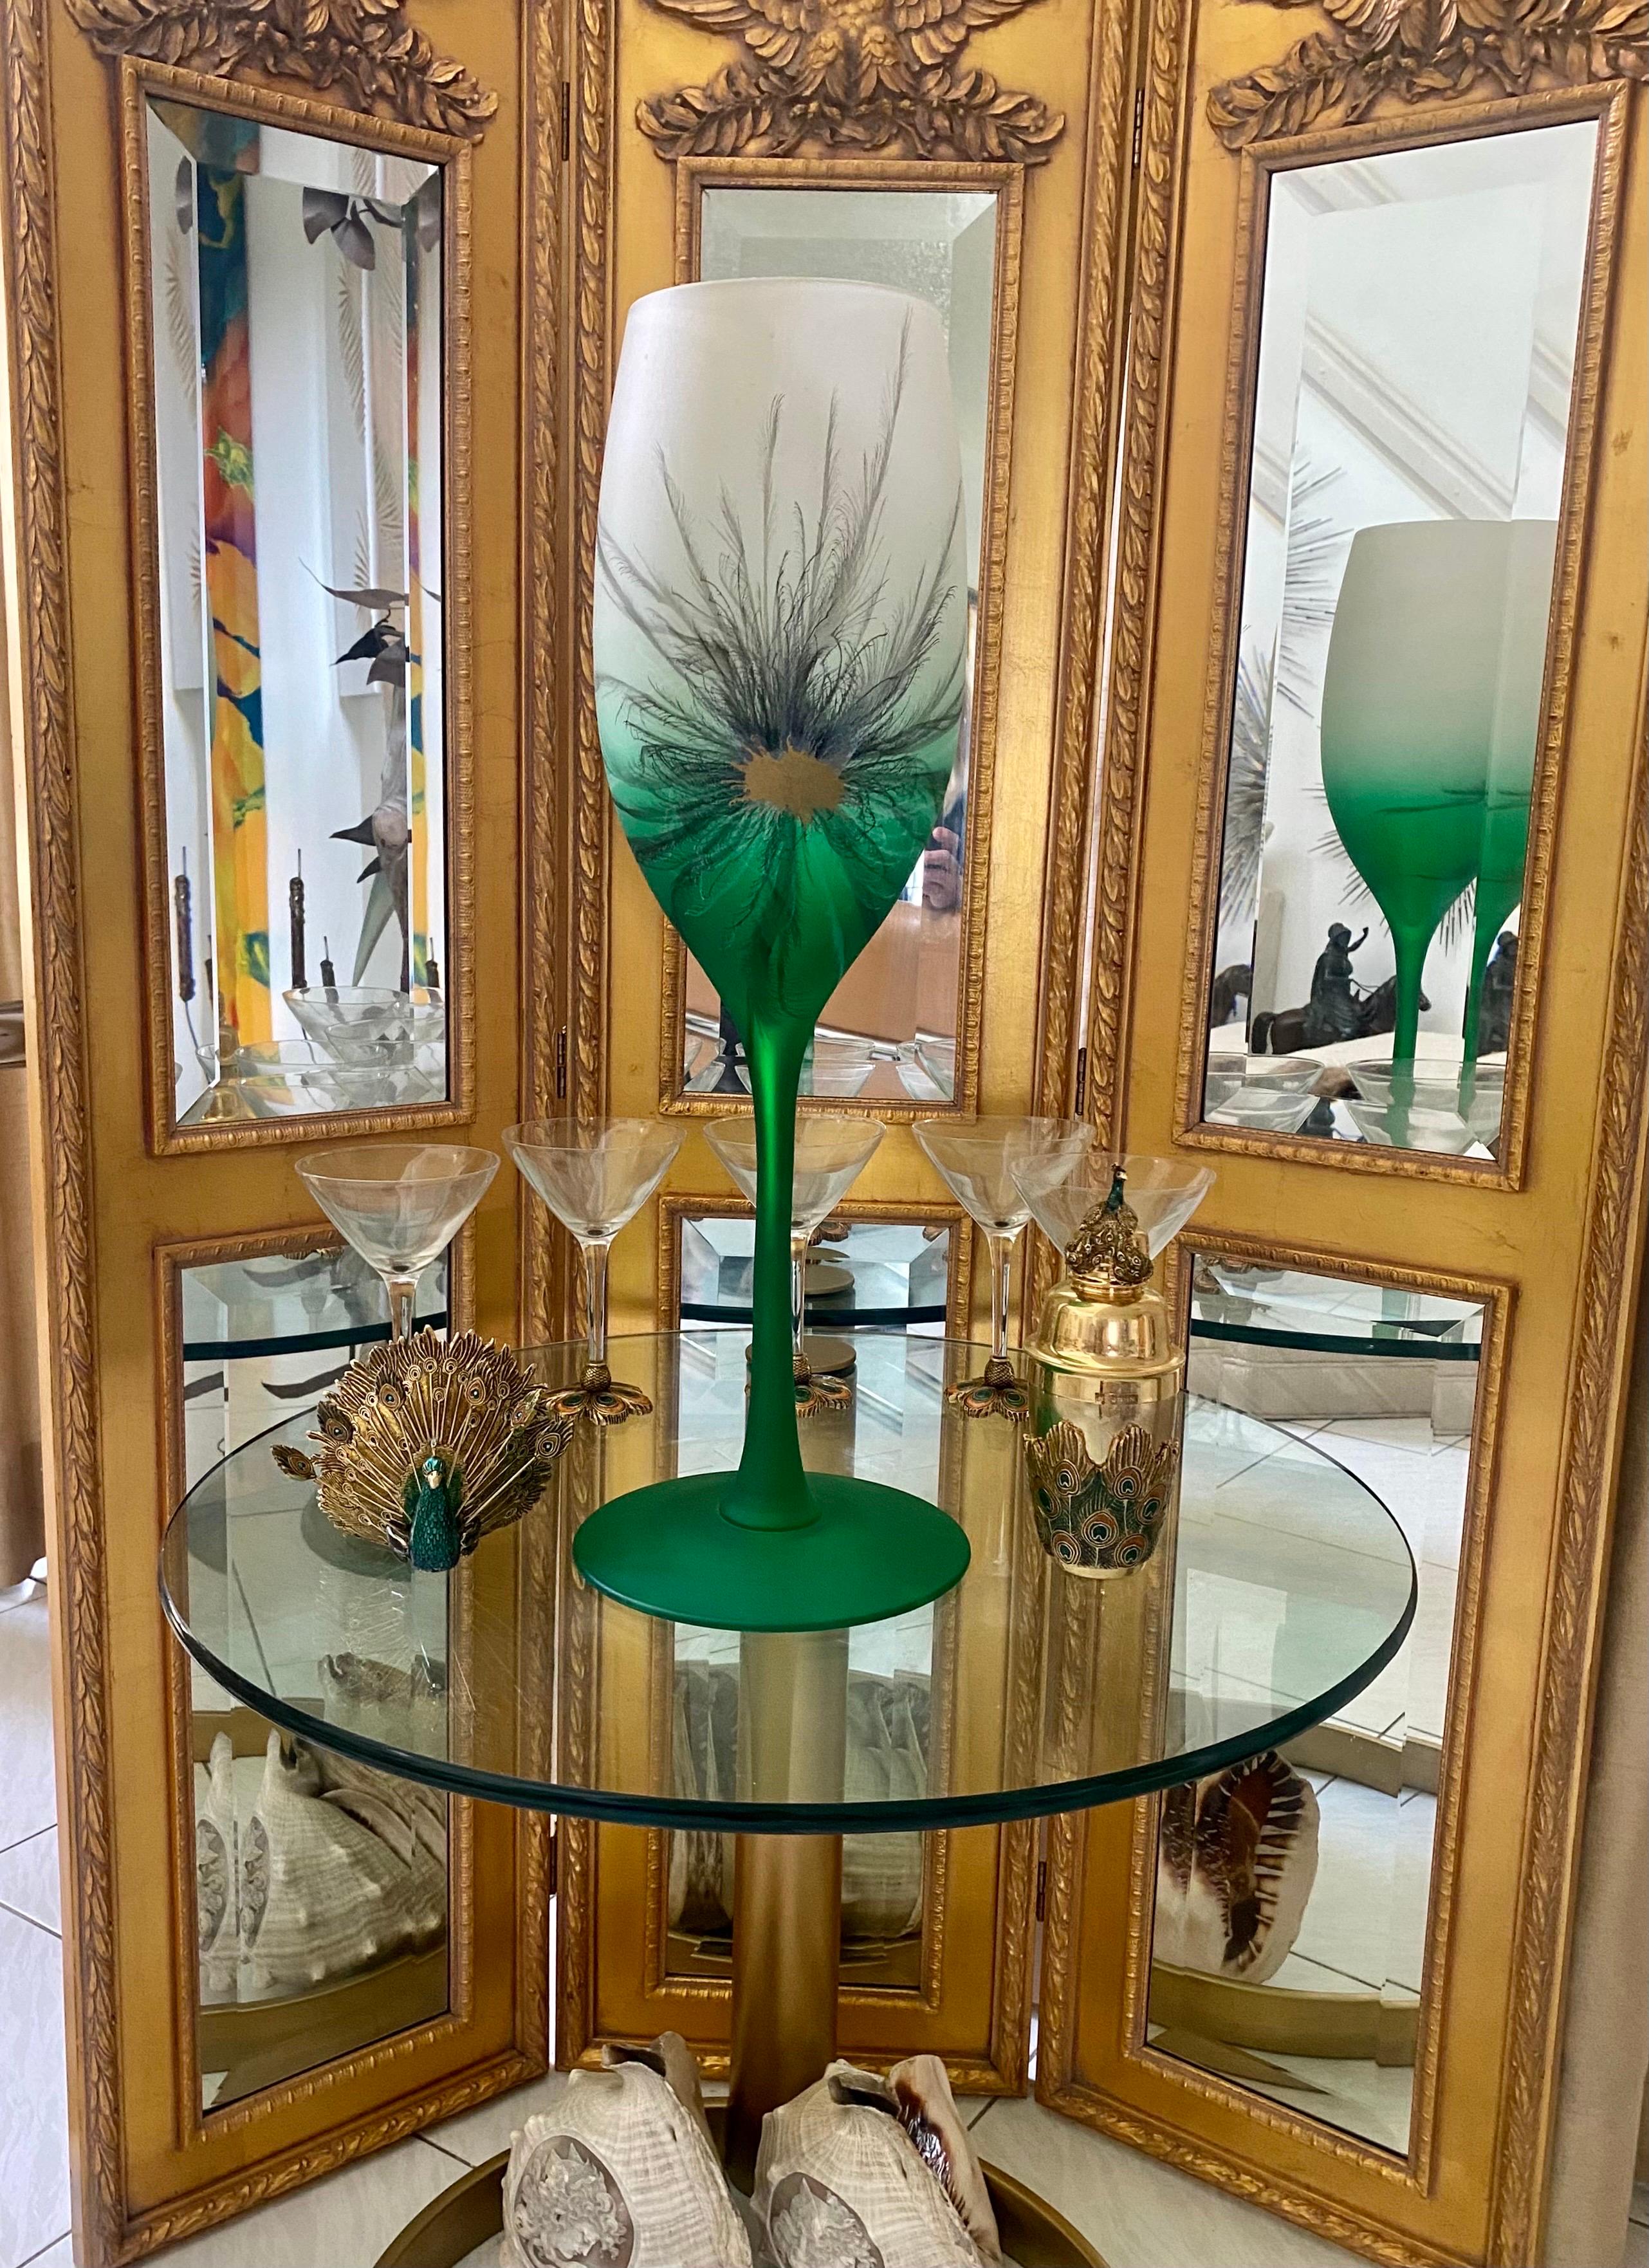 Hohe kelchförmige Vase aus zweifarbigem Glas in einer smaragdgrünen Farbe, die zu Weiß verblasst. Die Vase wurde von Hand mit einem zarten Federmuster mit einem goldenen Zentrum bemalt, das an eine Pfauenfeder erinnert.